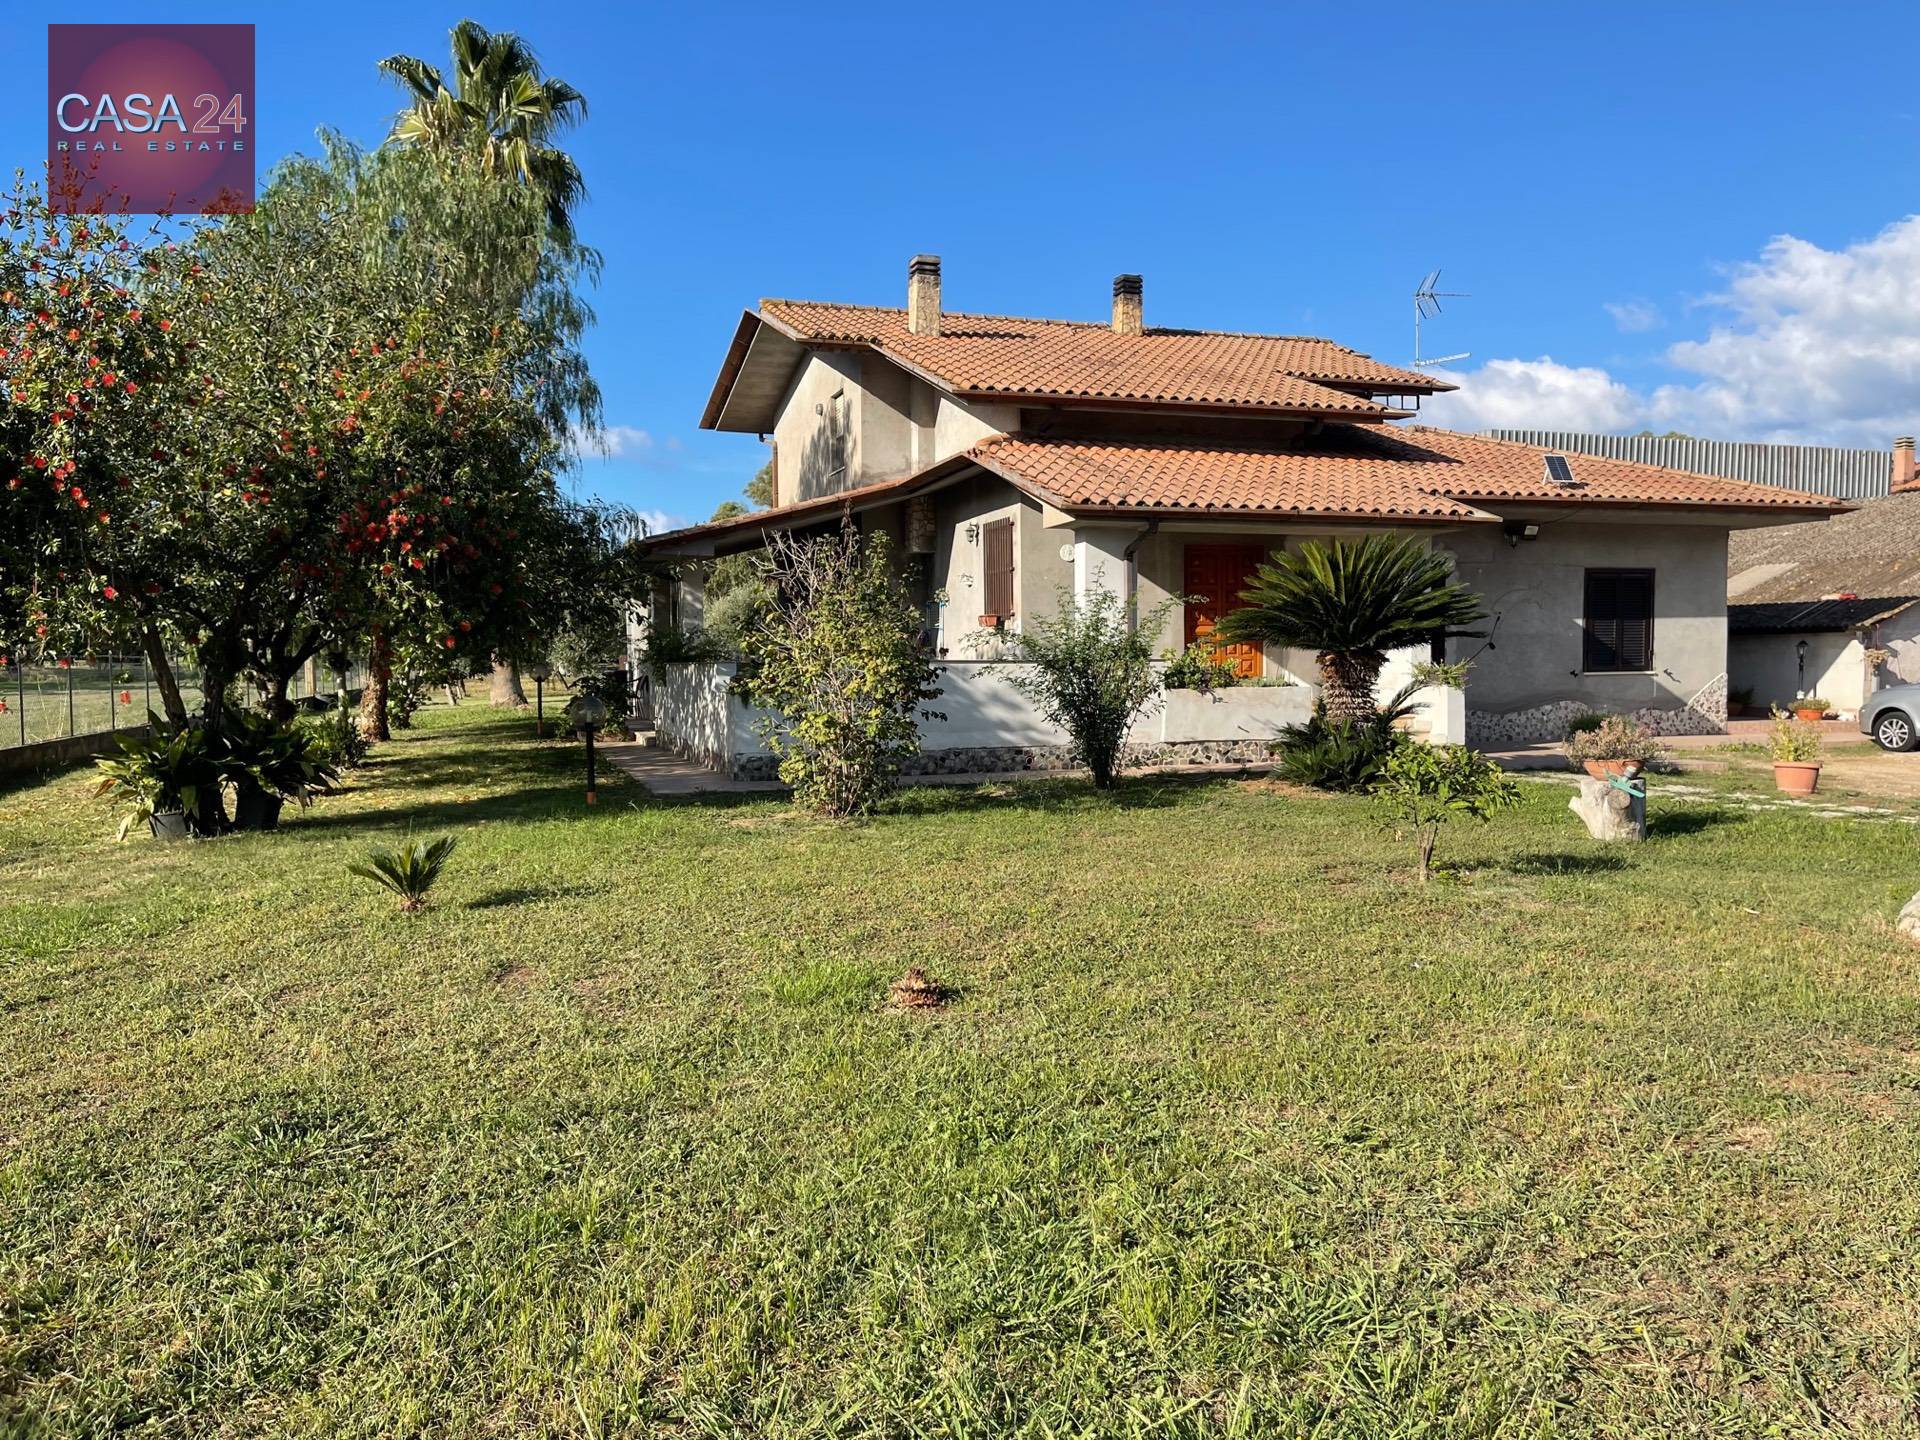 Villa in vendita a Sabaudia, 6 locali, zona Località: ColleDAlba, prezzo € 369.000 | PortaleAgenzieImmobiliari.it